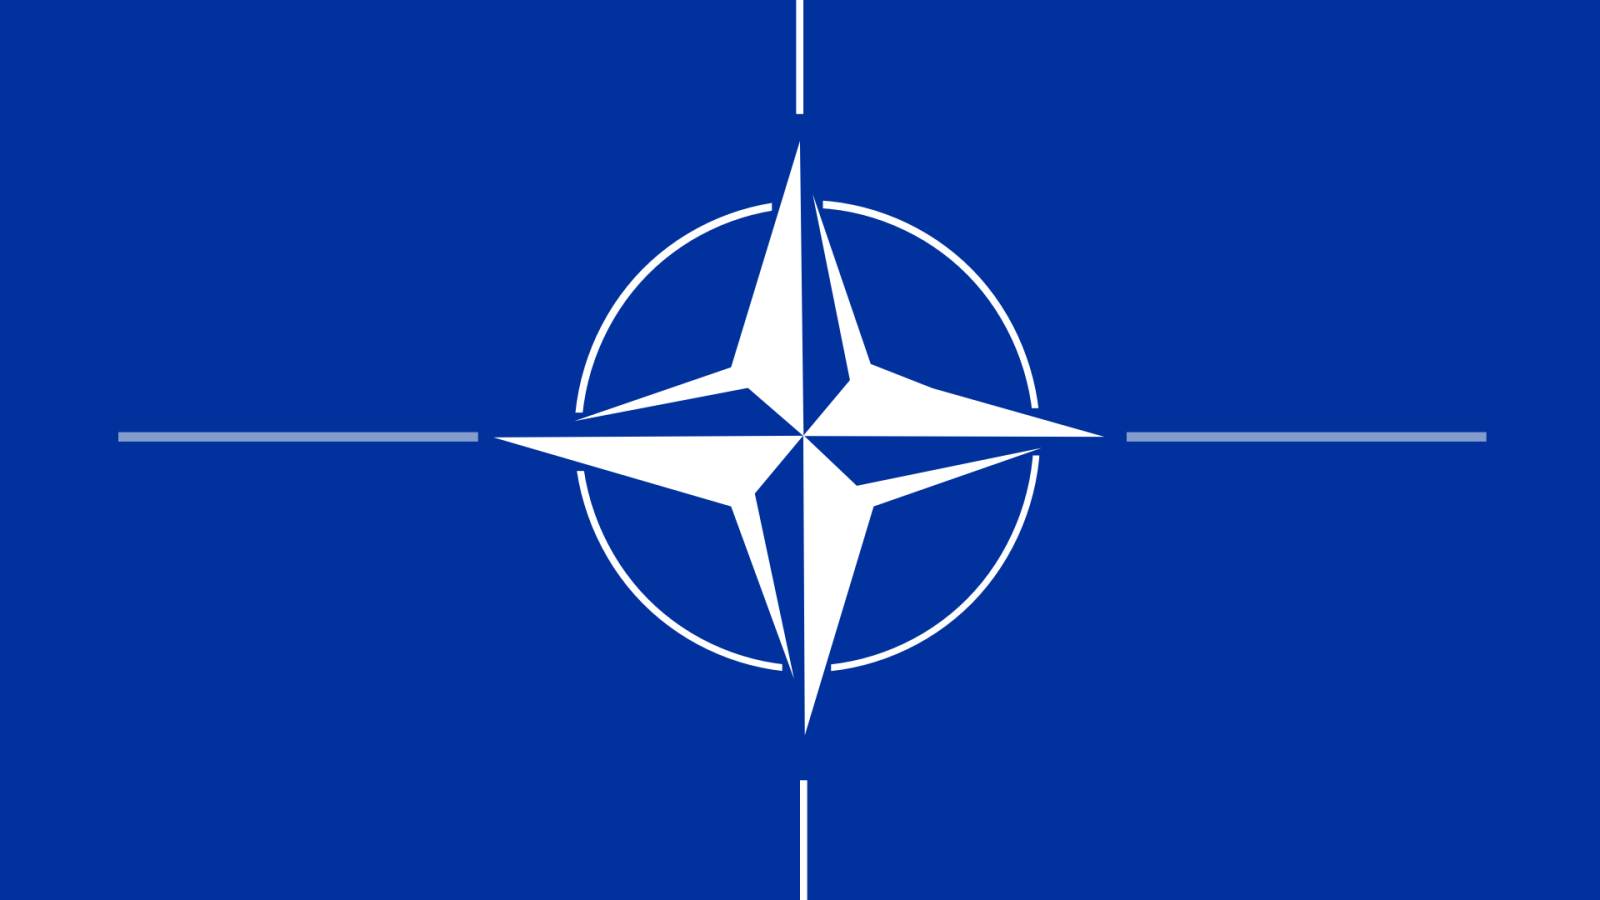 NATO Detaliaza Misiunea Protectie Aeriana Romaniei Flancului Estic